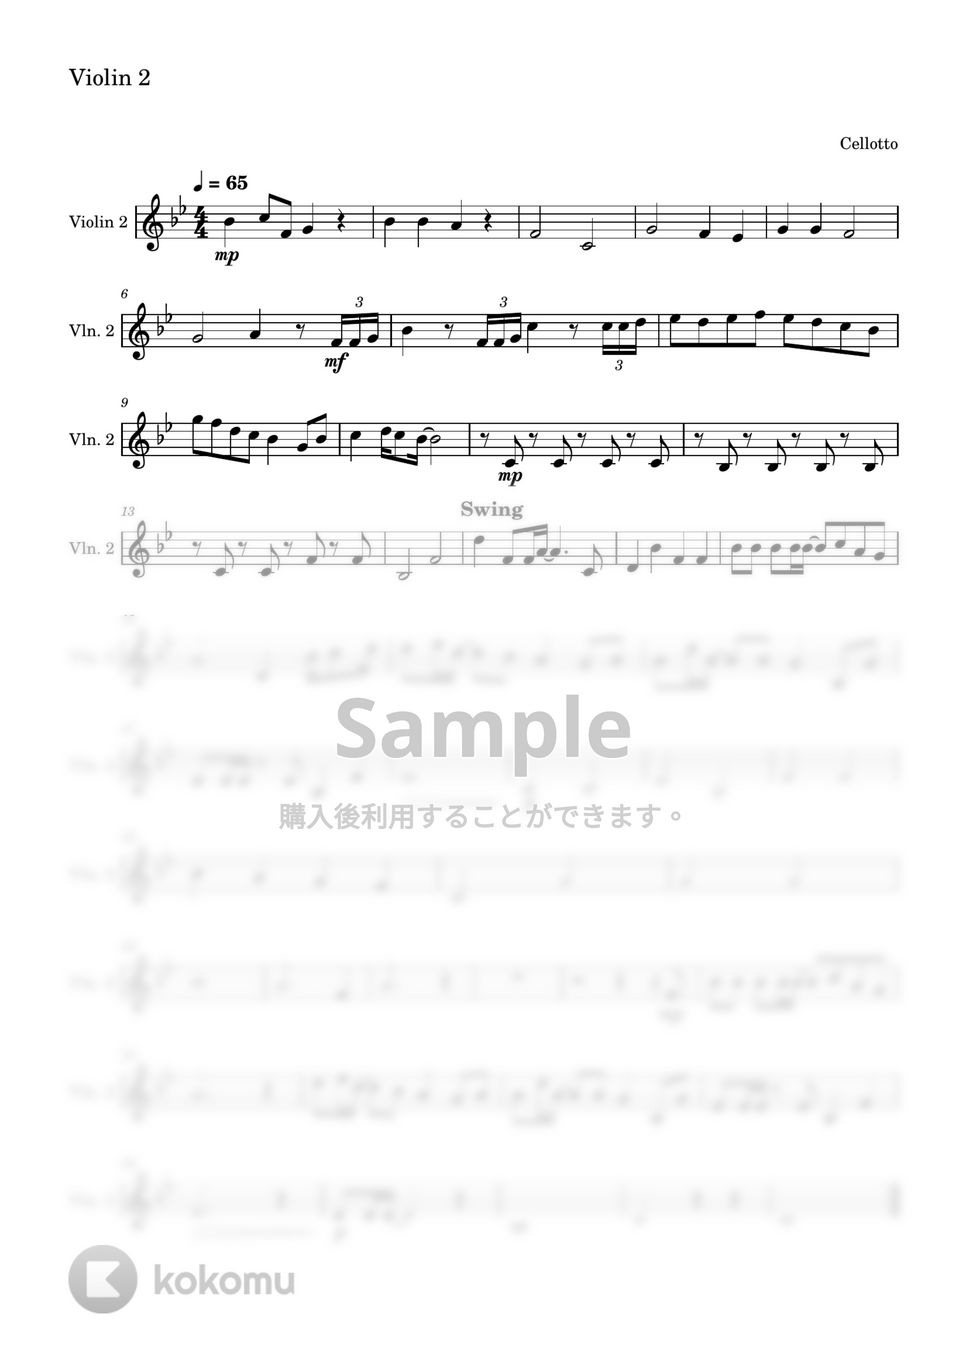 清水翔太 - 花束のかわりにメロディーを (ヴァイオリン1&2パート) by Cellotto